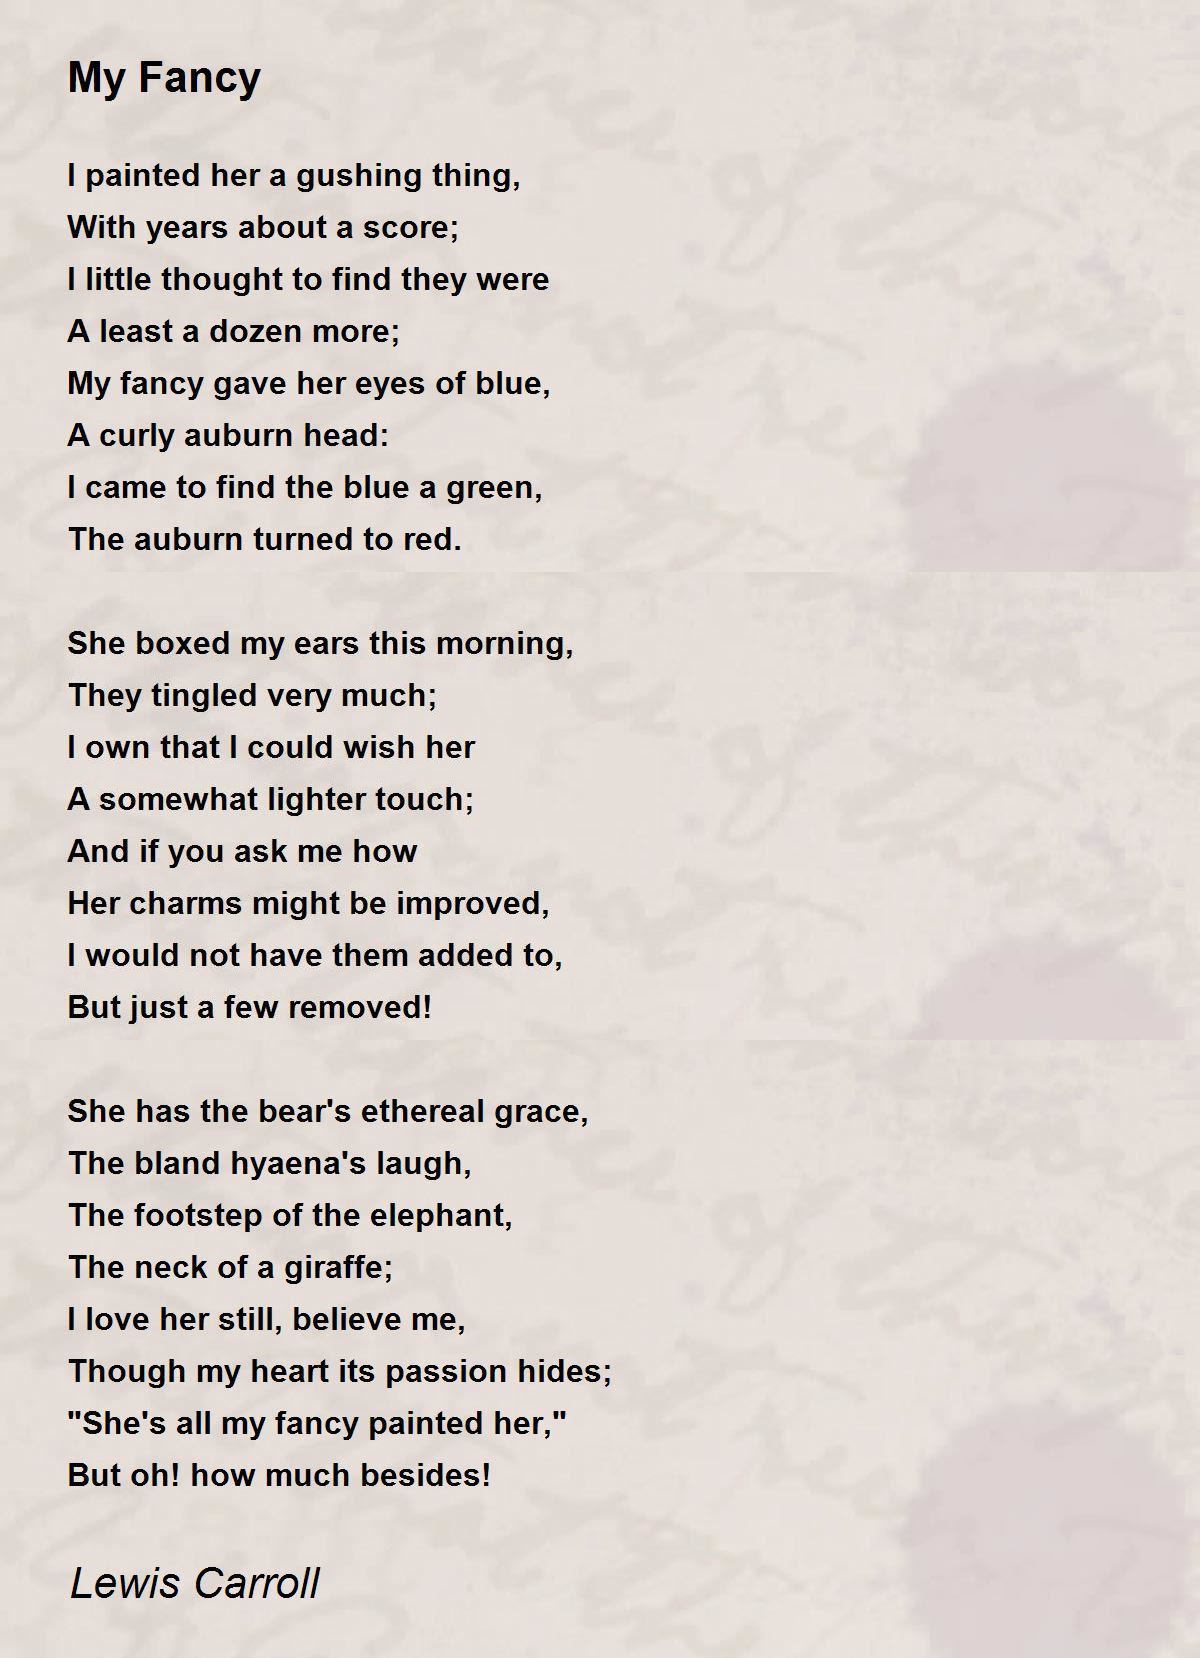 My Fancy - My Fancy Poem by Lewis Carroll